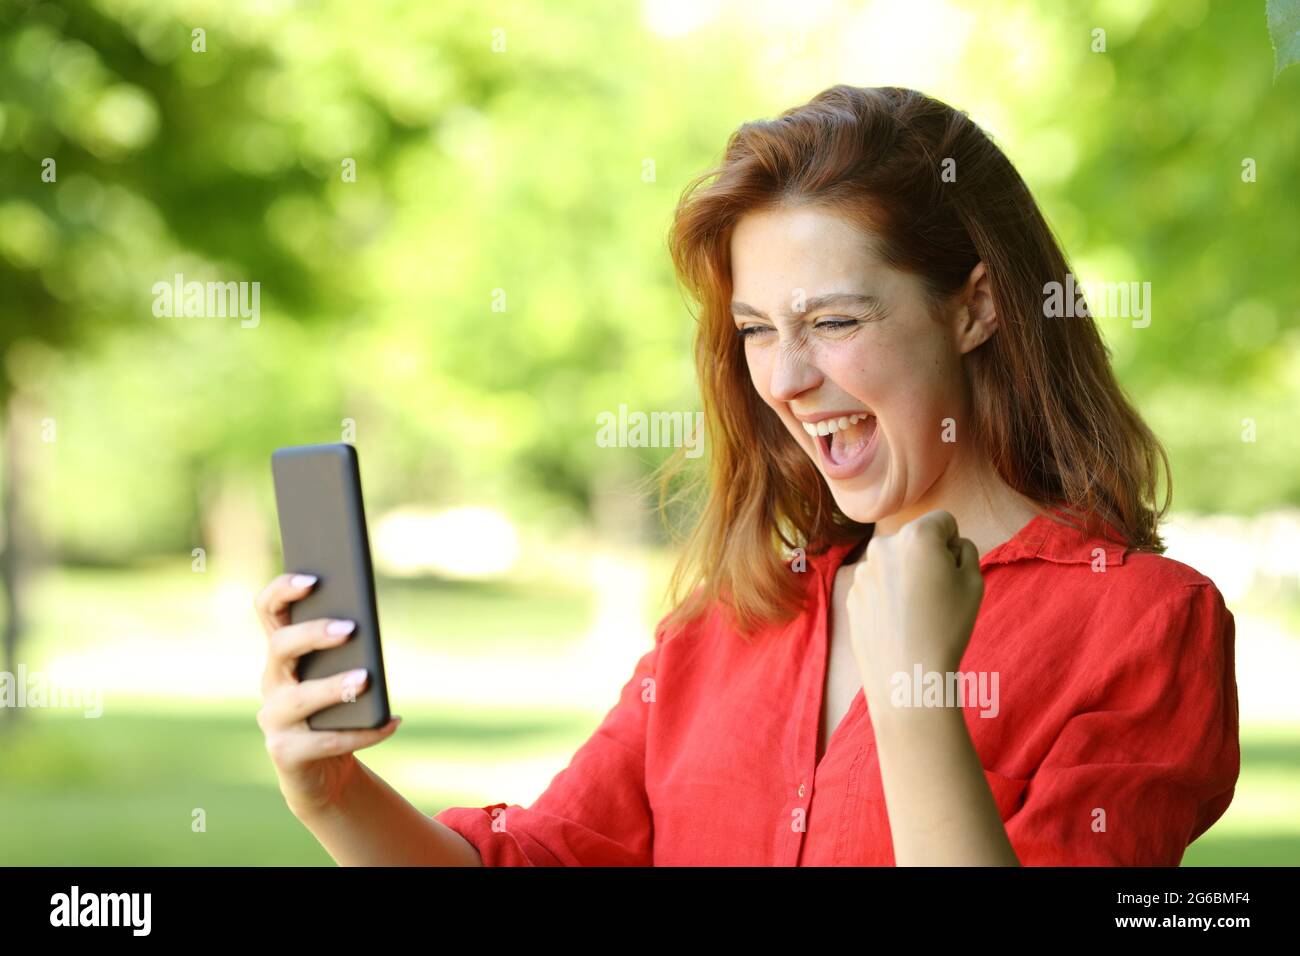 Donna entusiasta in rosso che festeggia le buone notizie controllando lo smartphone in un parco Foto Stock